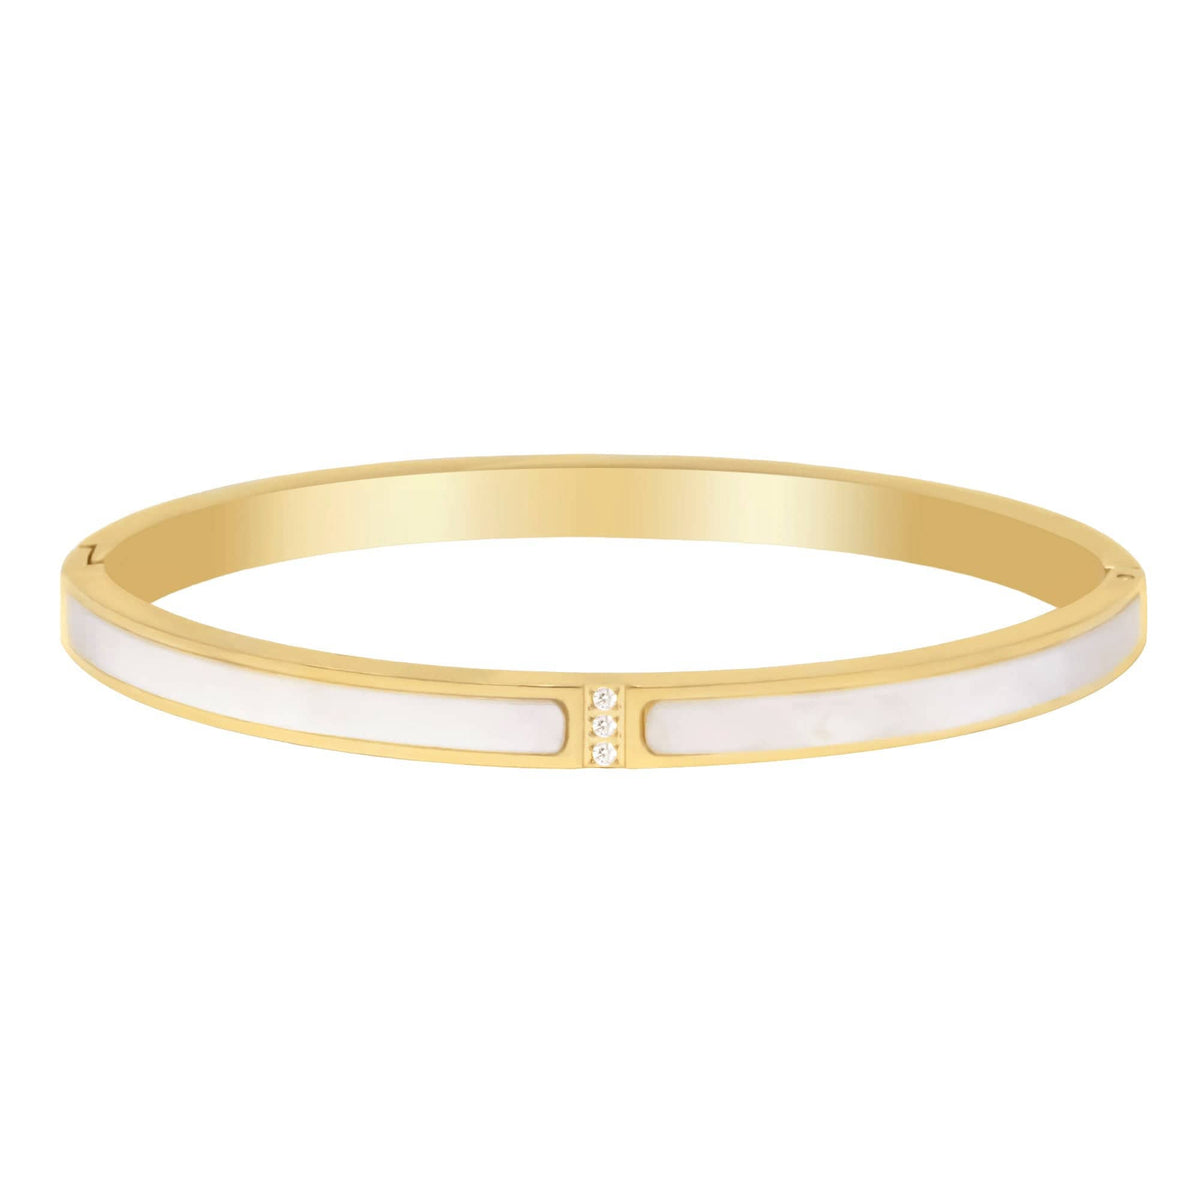 BohoMoon Stainless Steel Ines Bracelet Gold